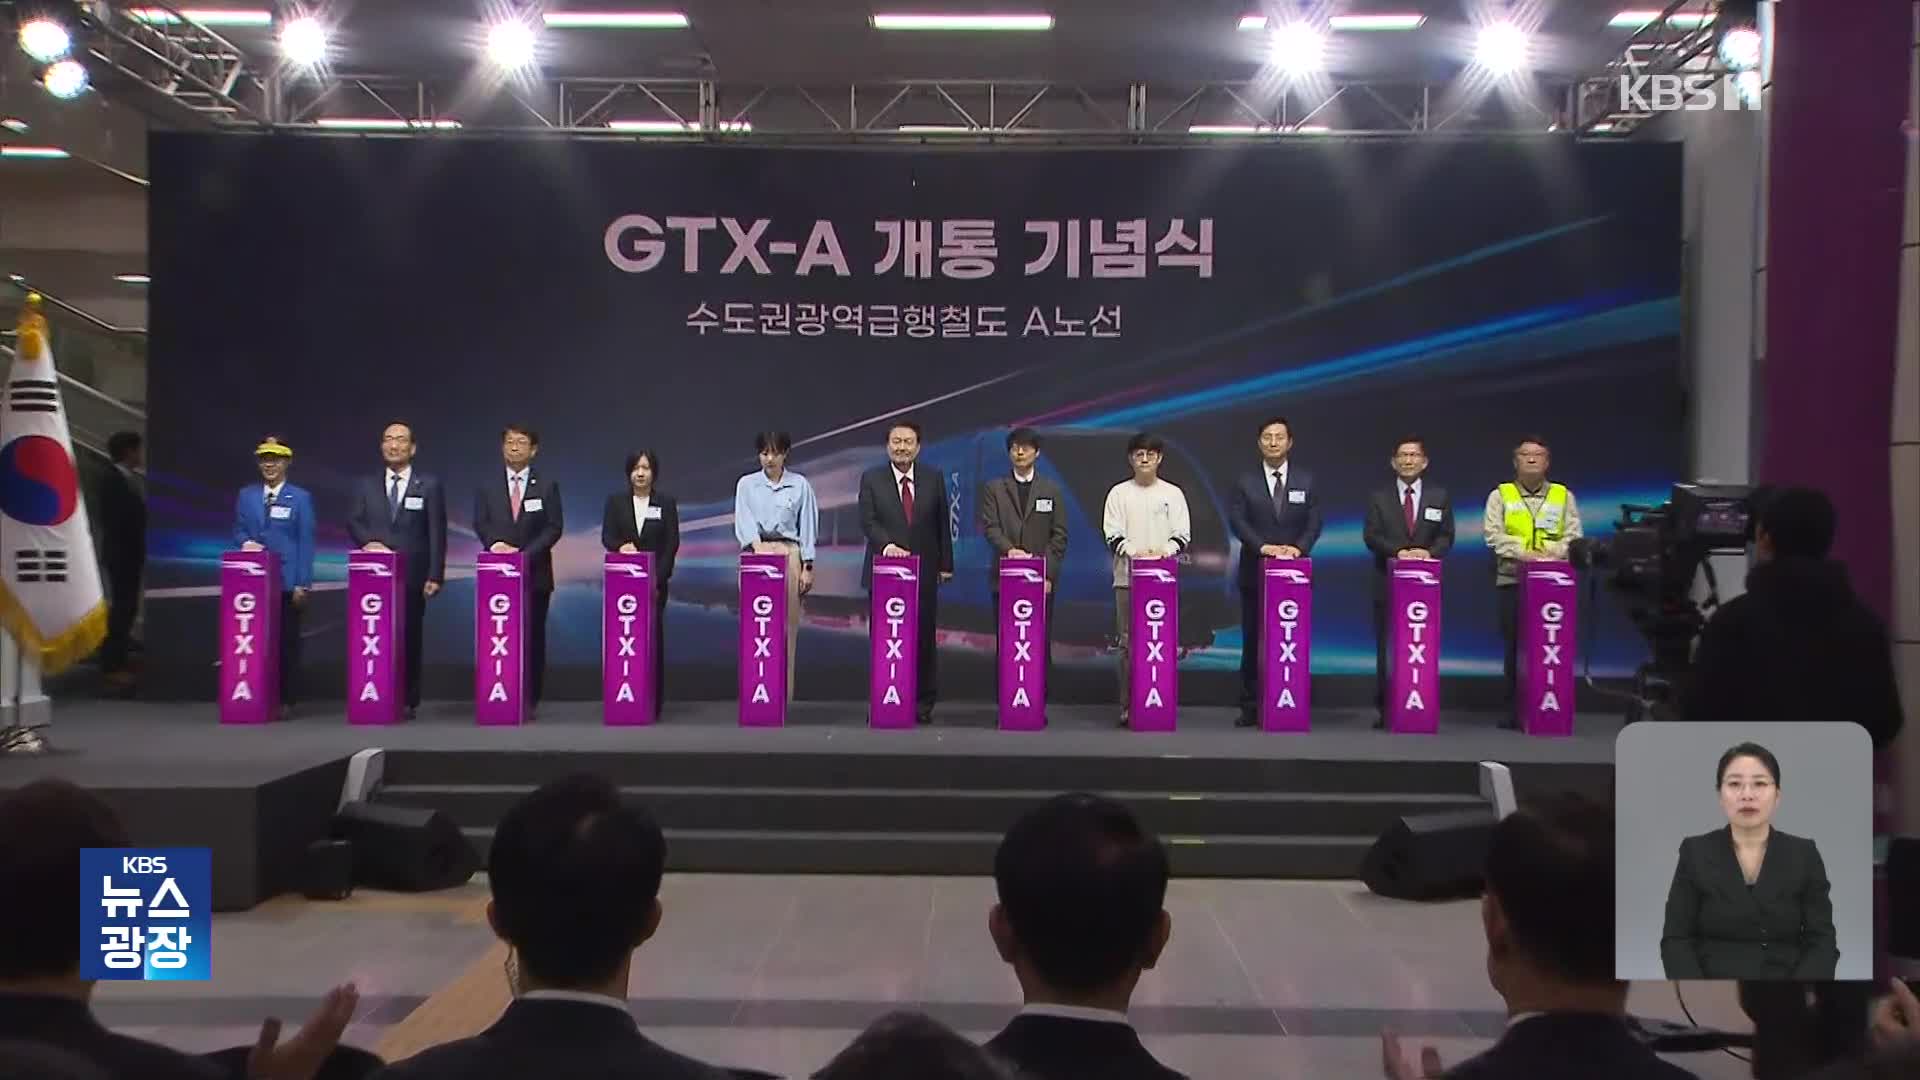 GTX-A 개통식…윤 대통령 “대중교통 혁명”